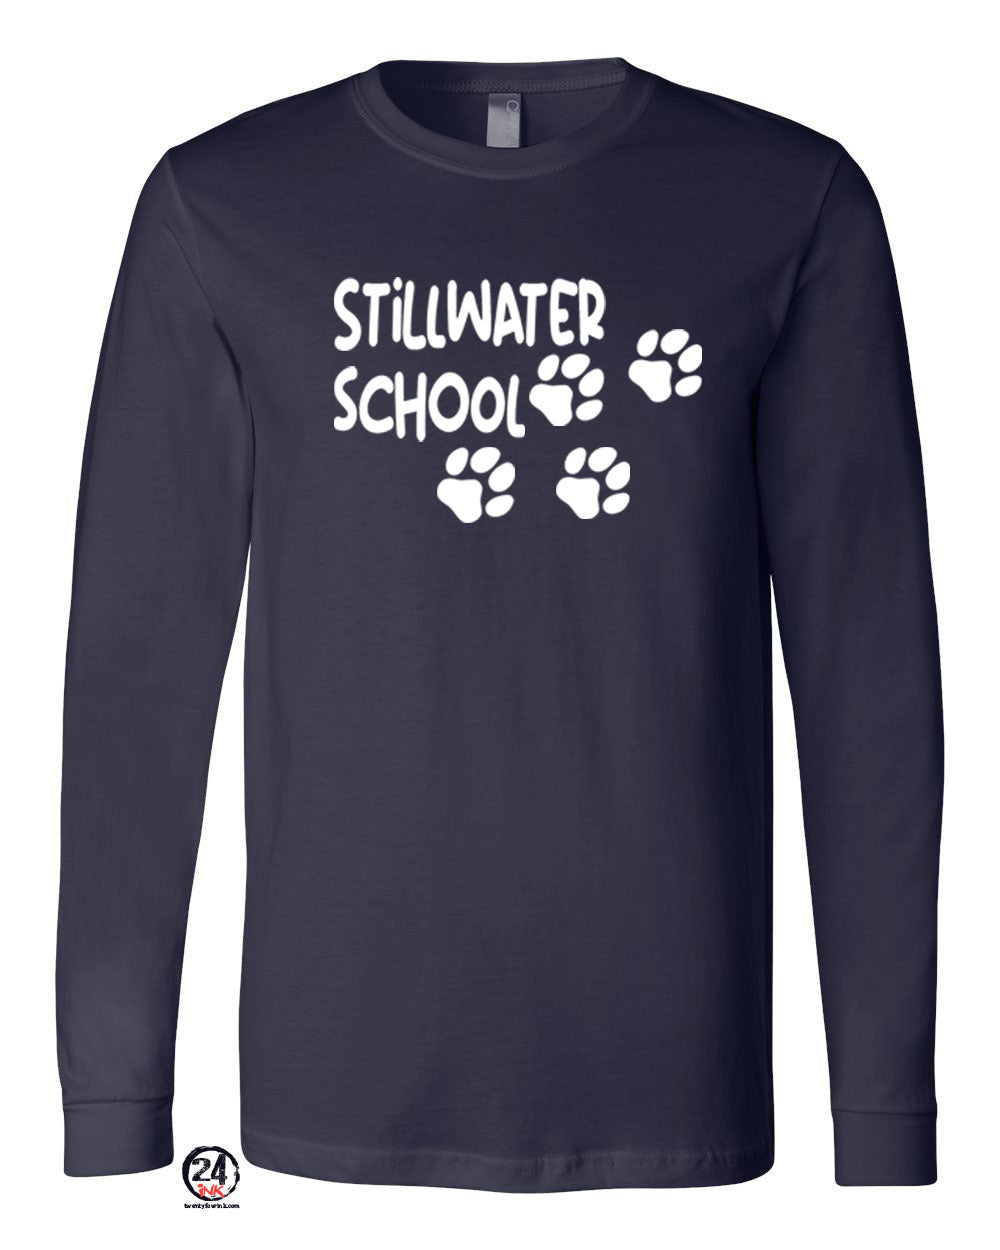 Stillwater Design 4 Long Sleeve Shirt